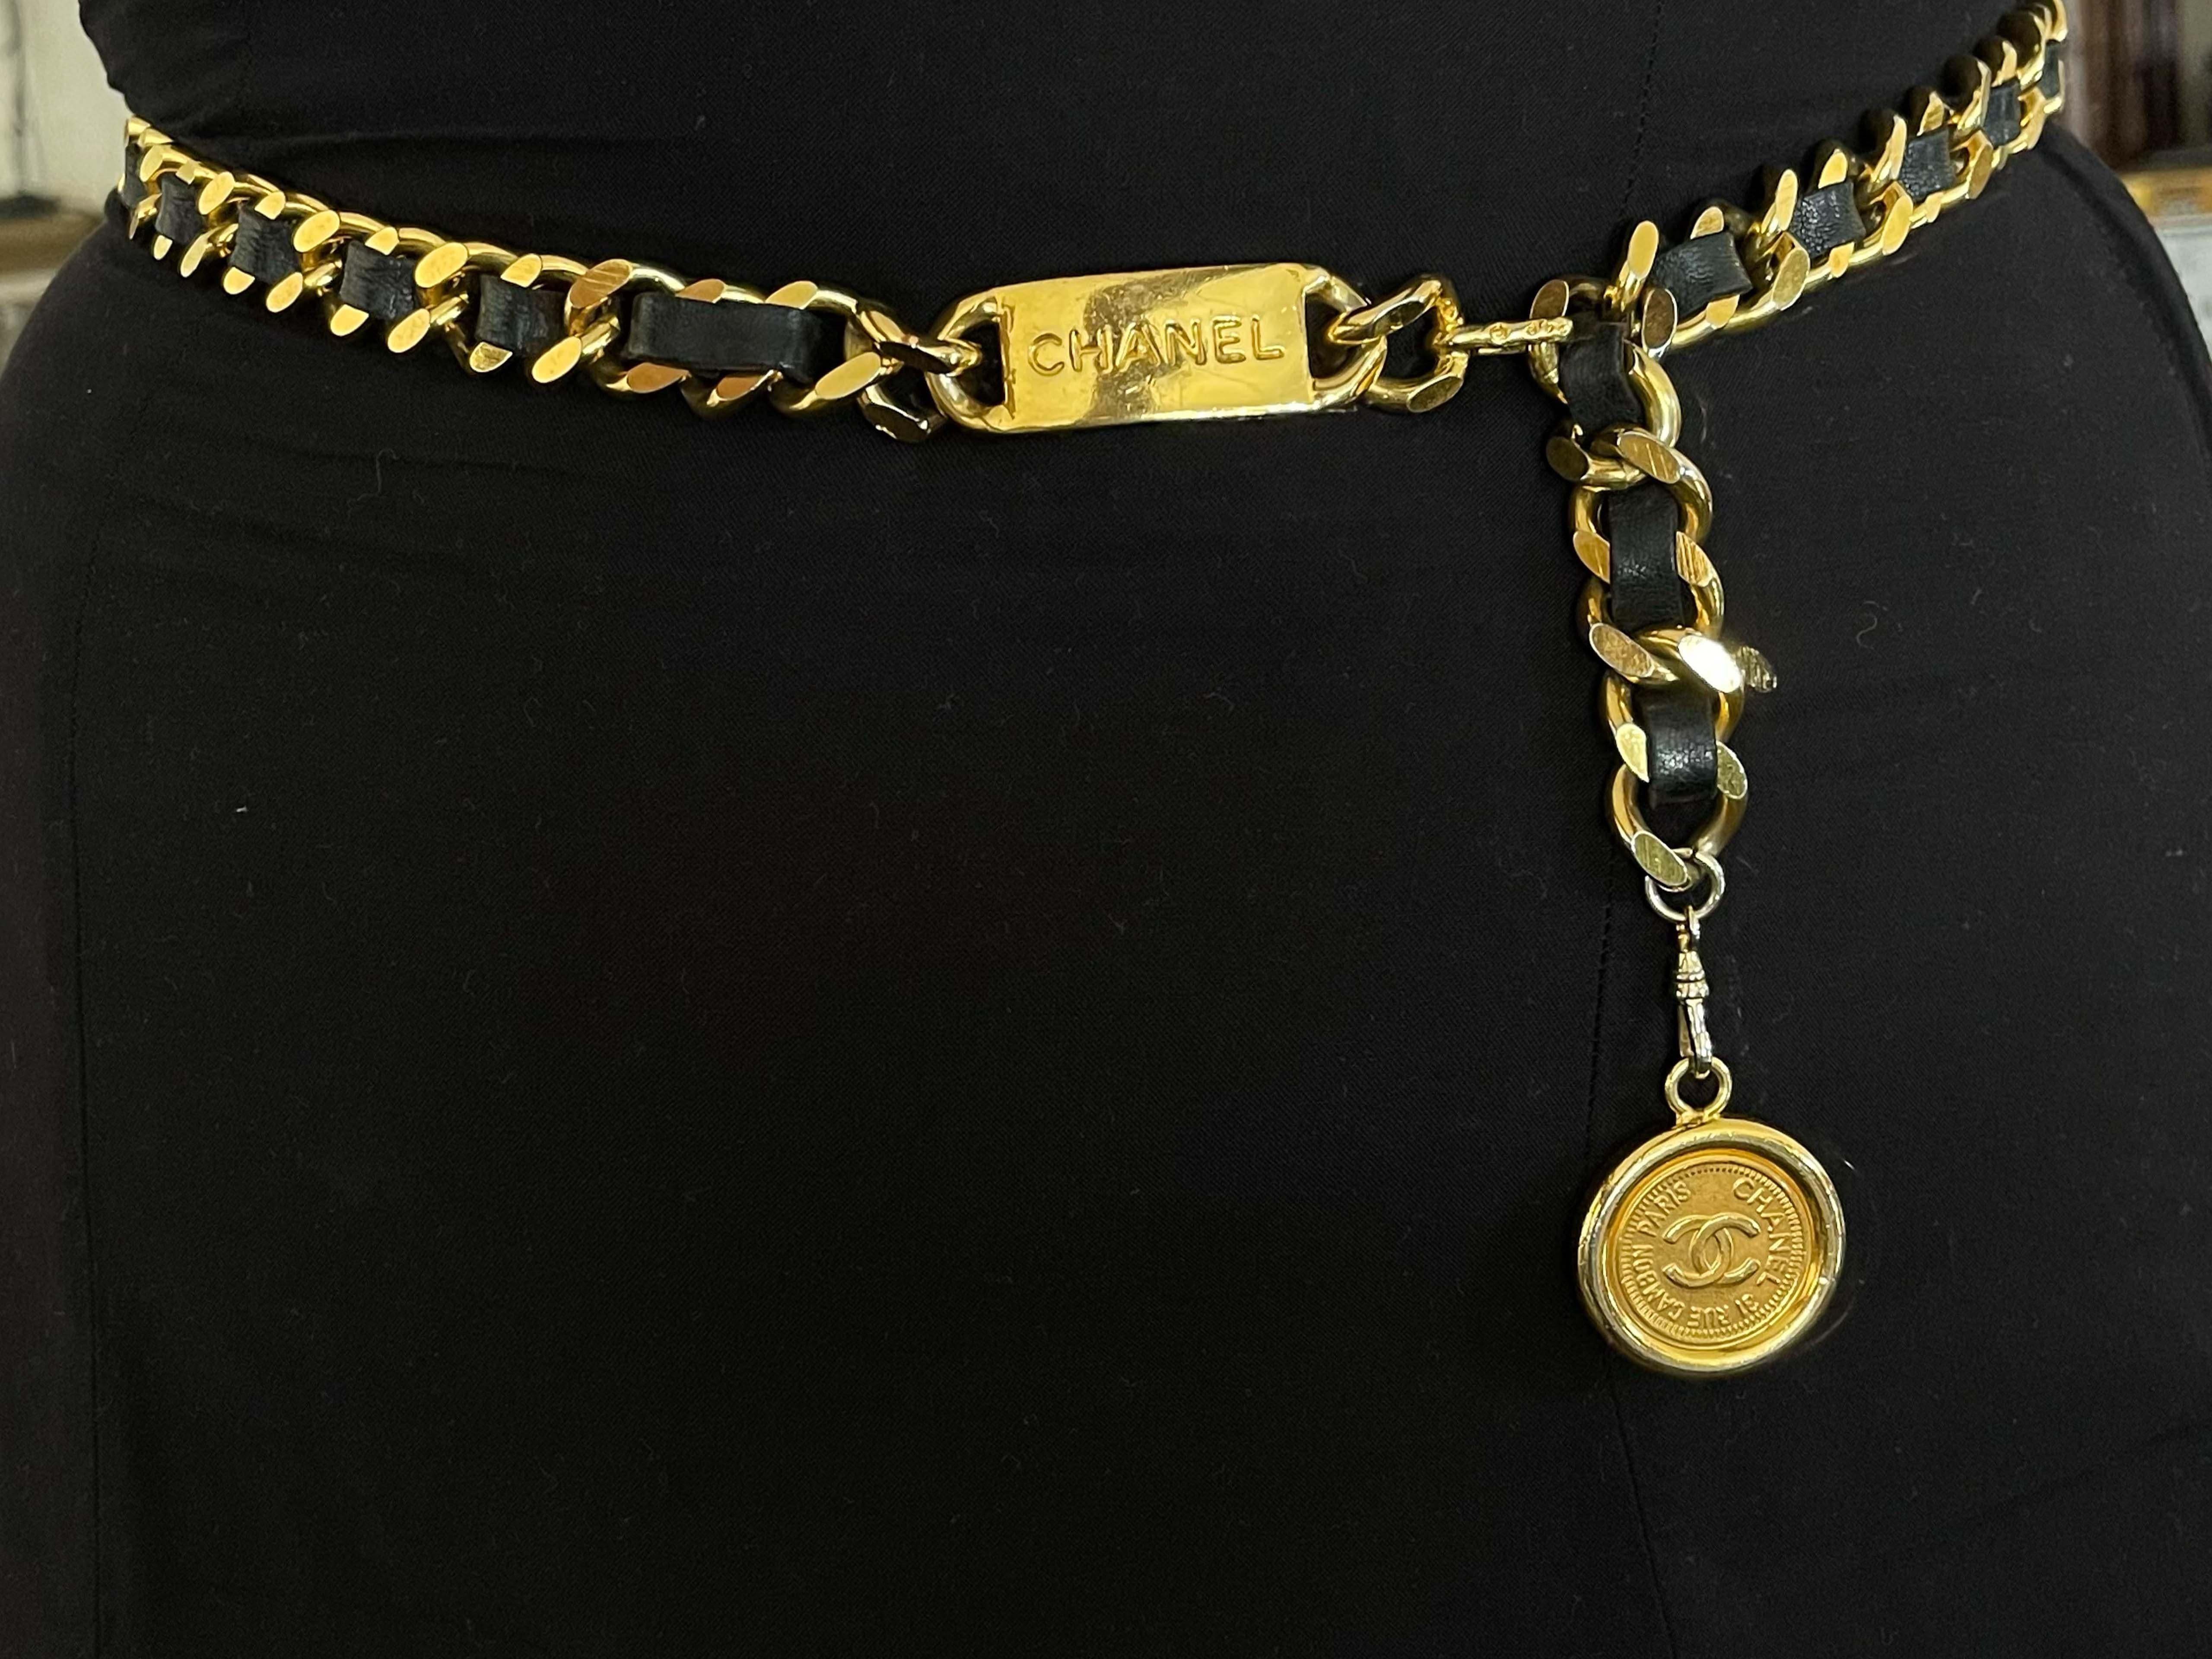 Dieser klassische und schicke Vintage-Chanel-Kettengürtel aus vergoldetem Metall ist mit einem Medaillon-Anhänger mit 